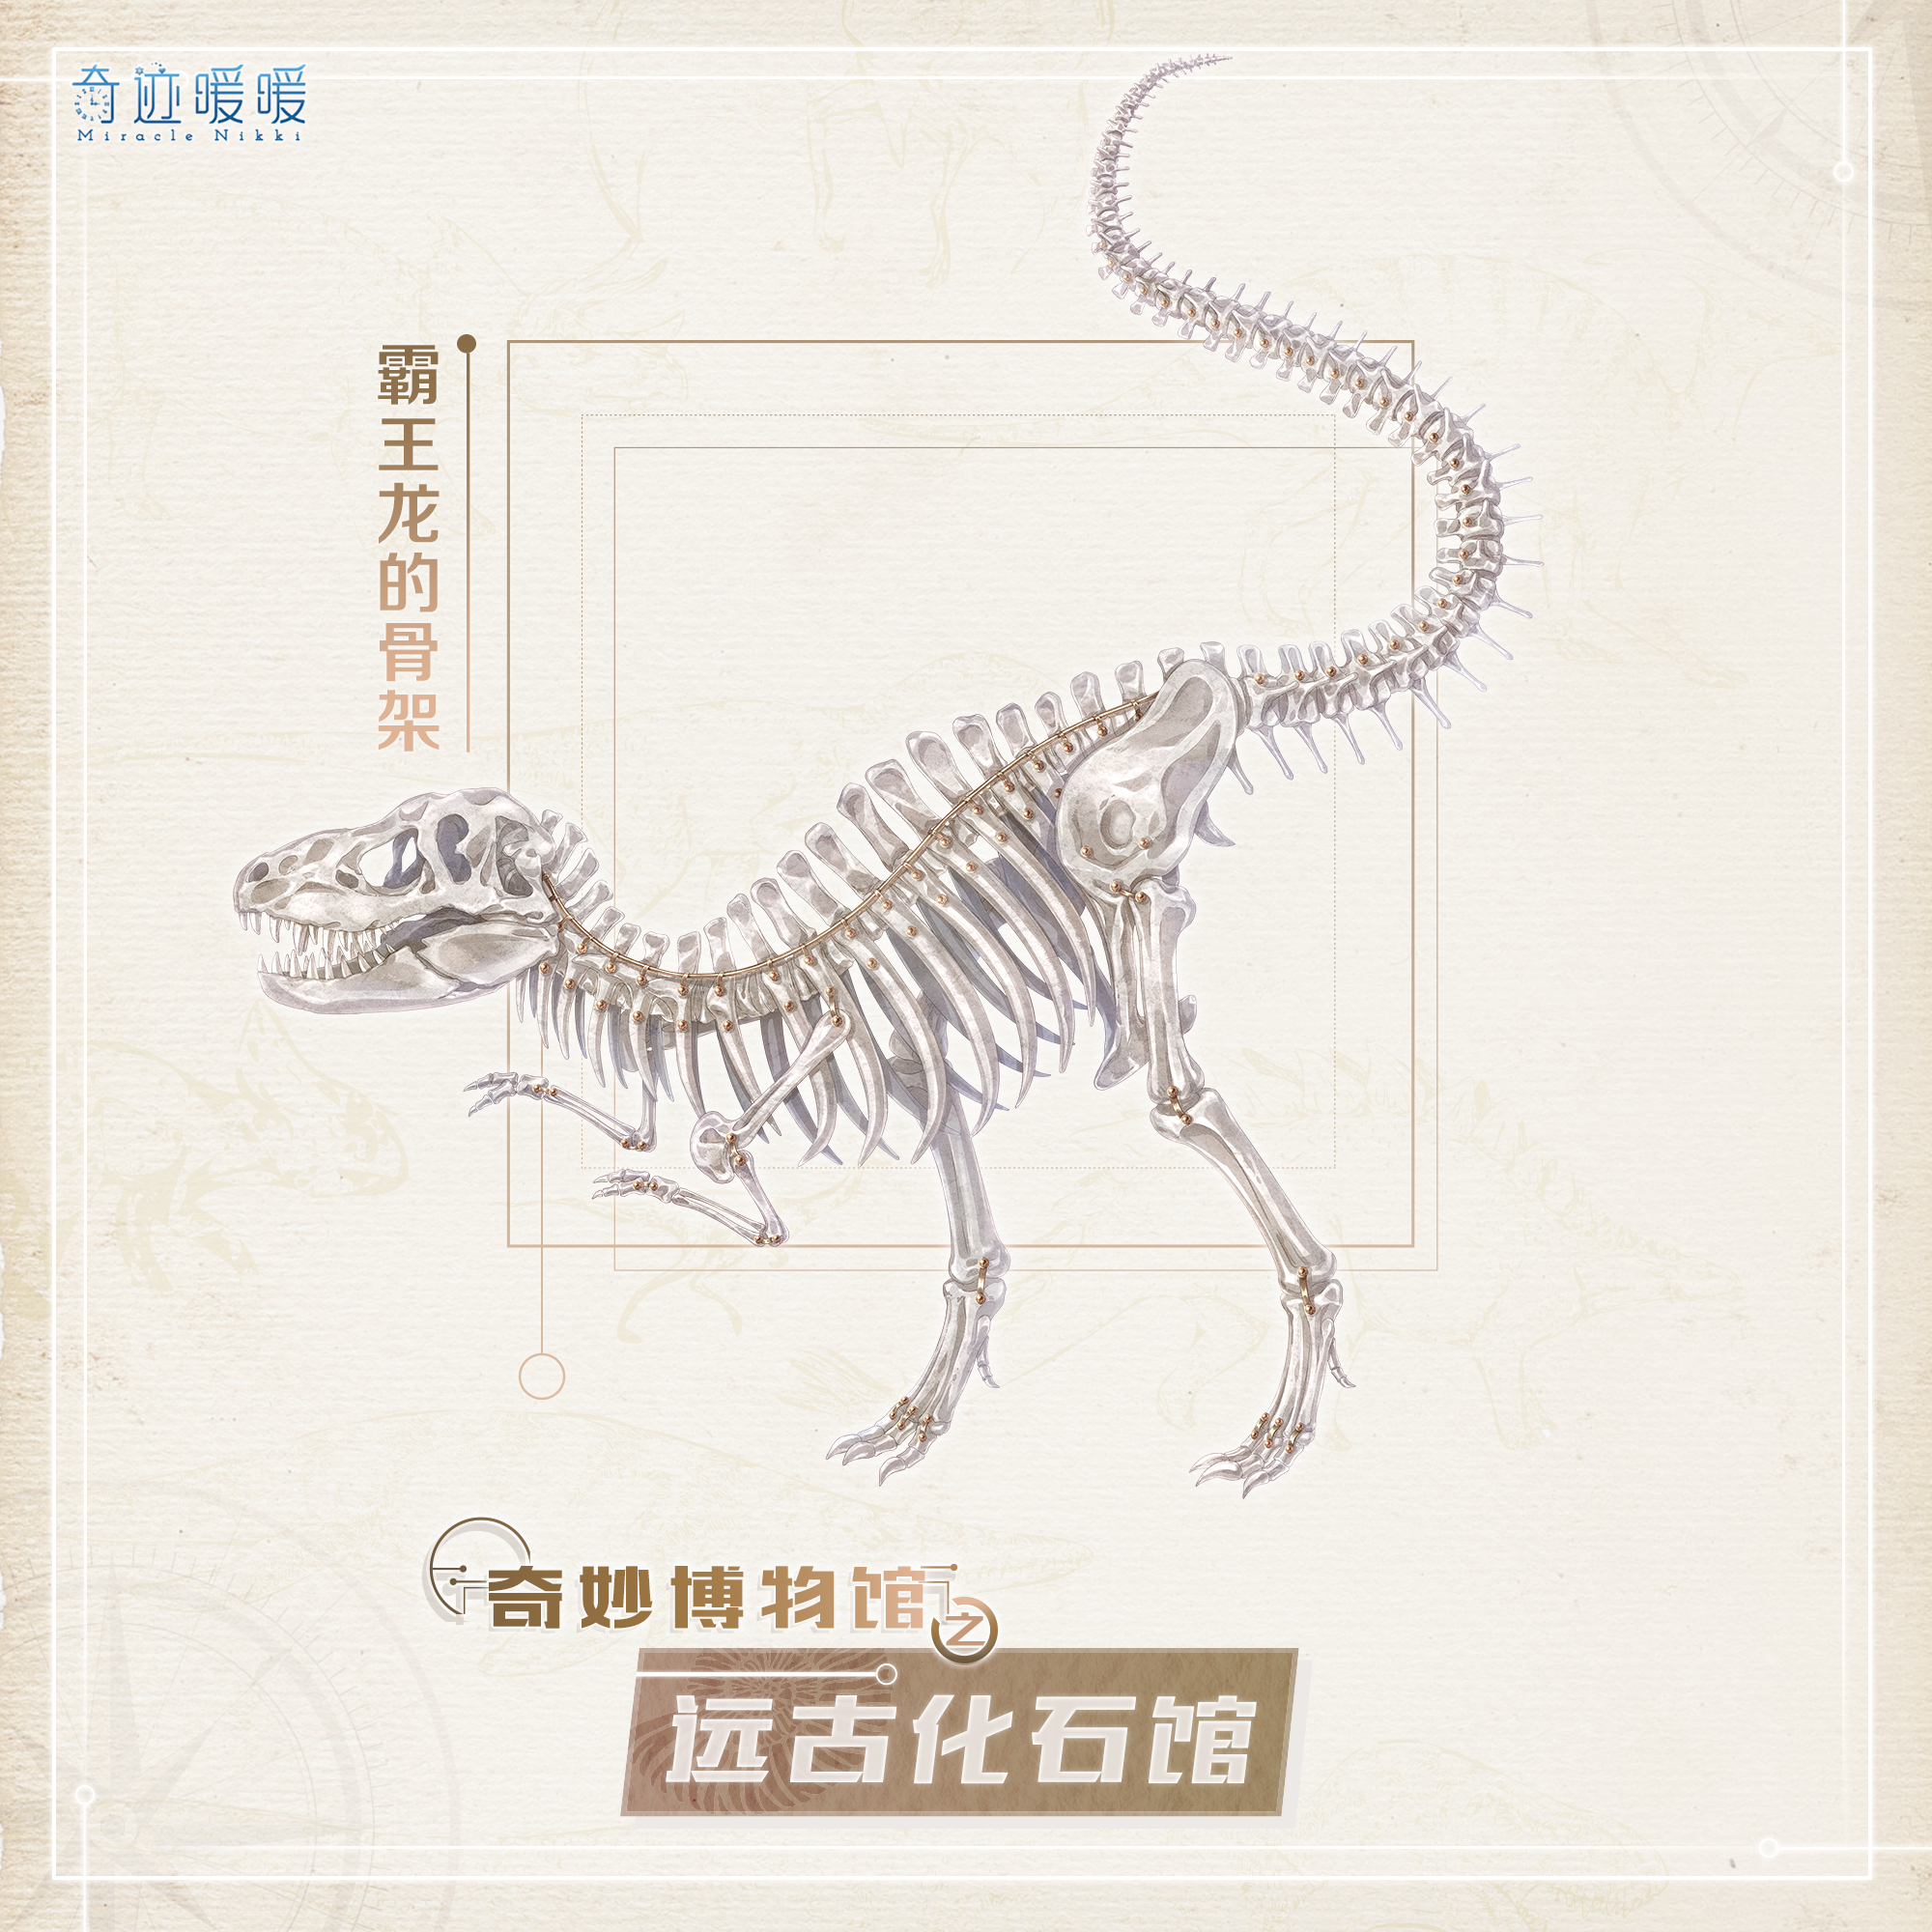 远古化石馆-海报1.png